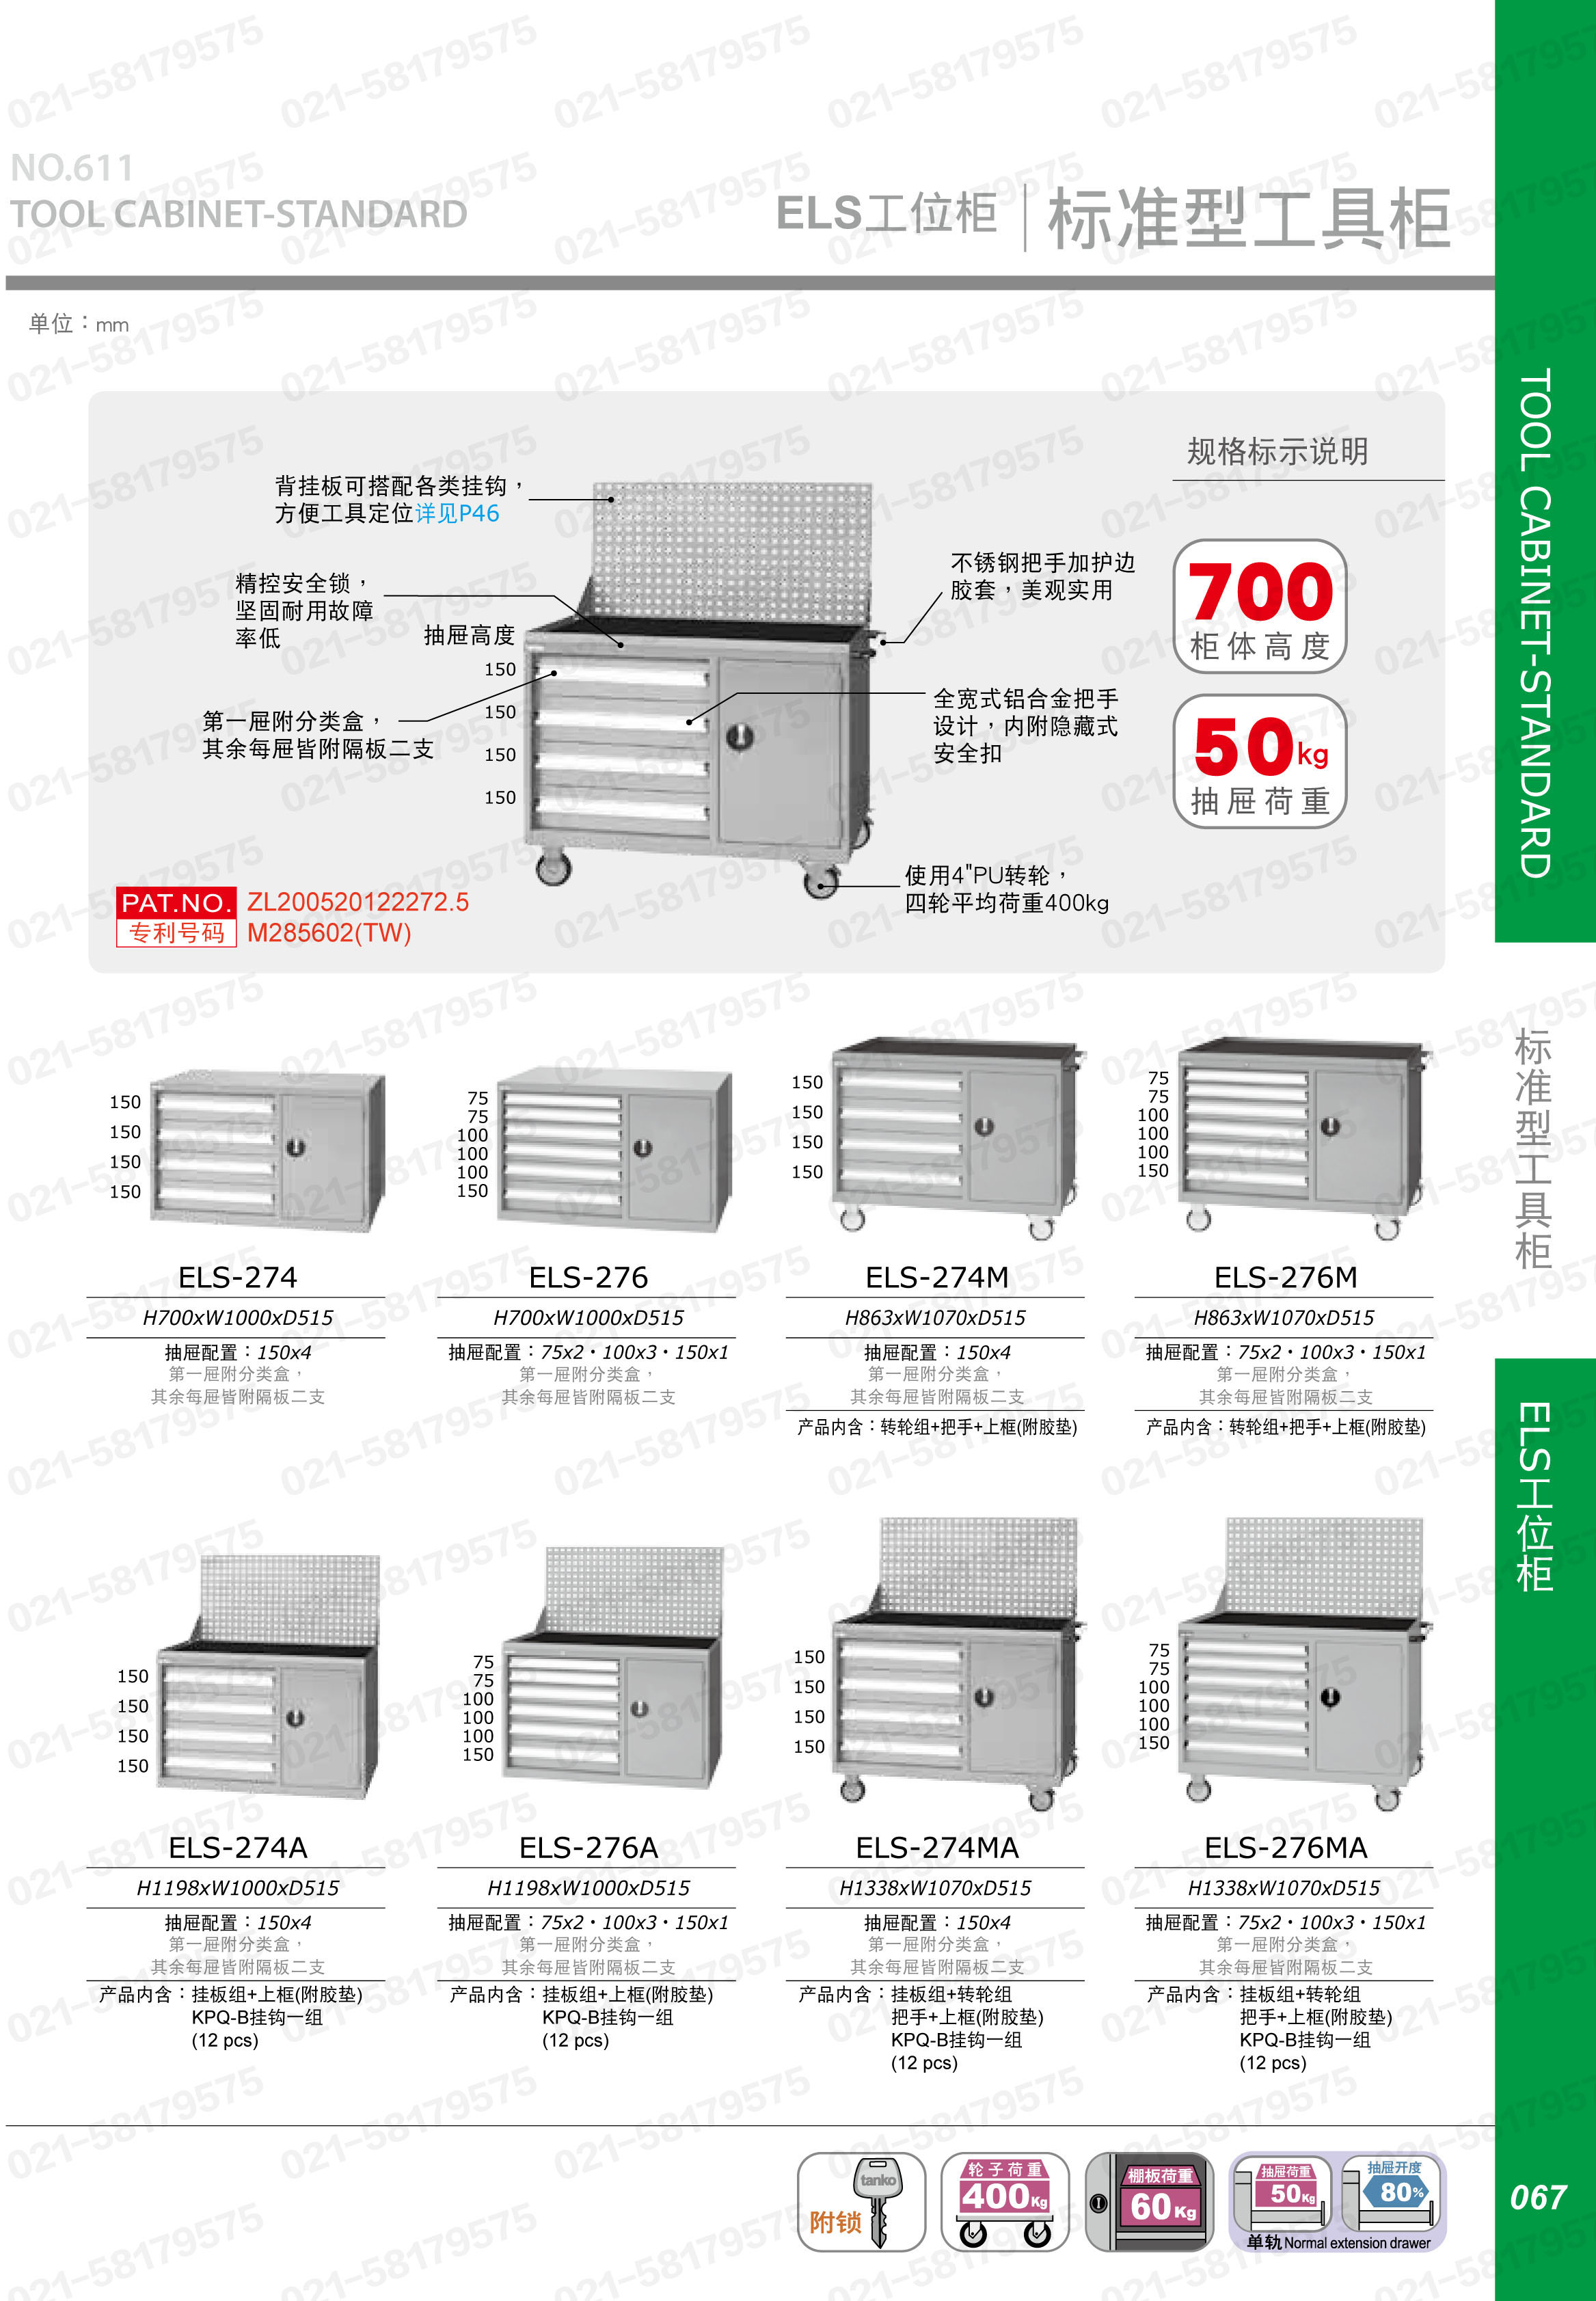 标准型门抽组合工具柜,ELS-274,1Y0966